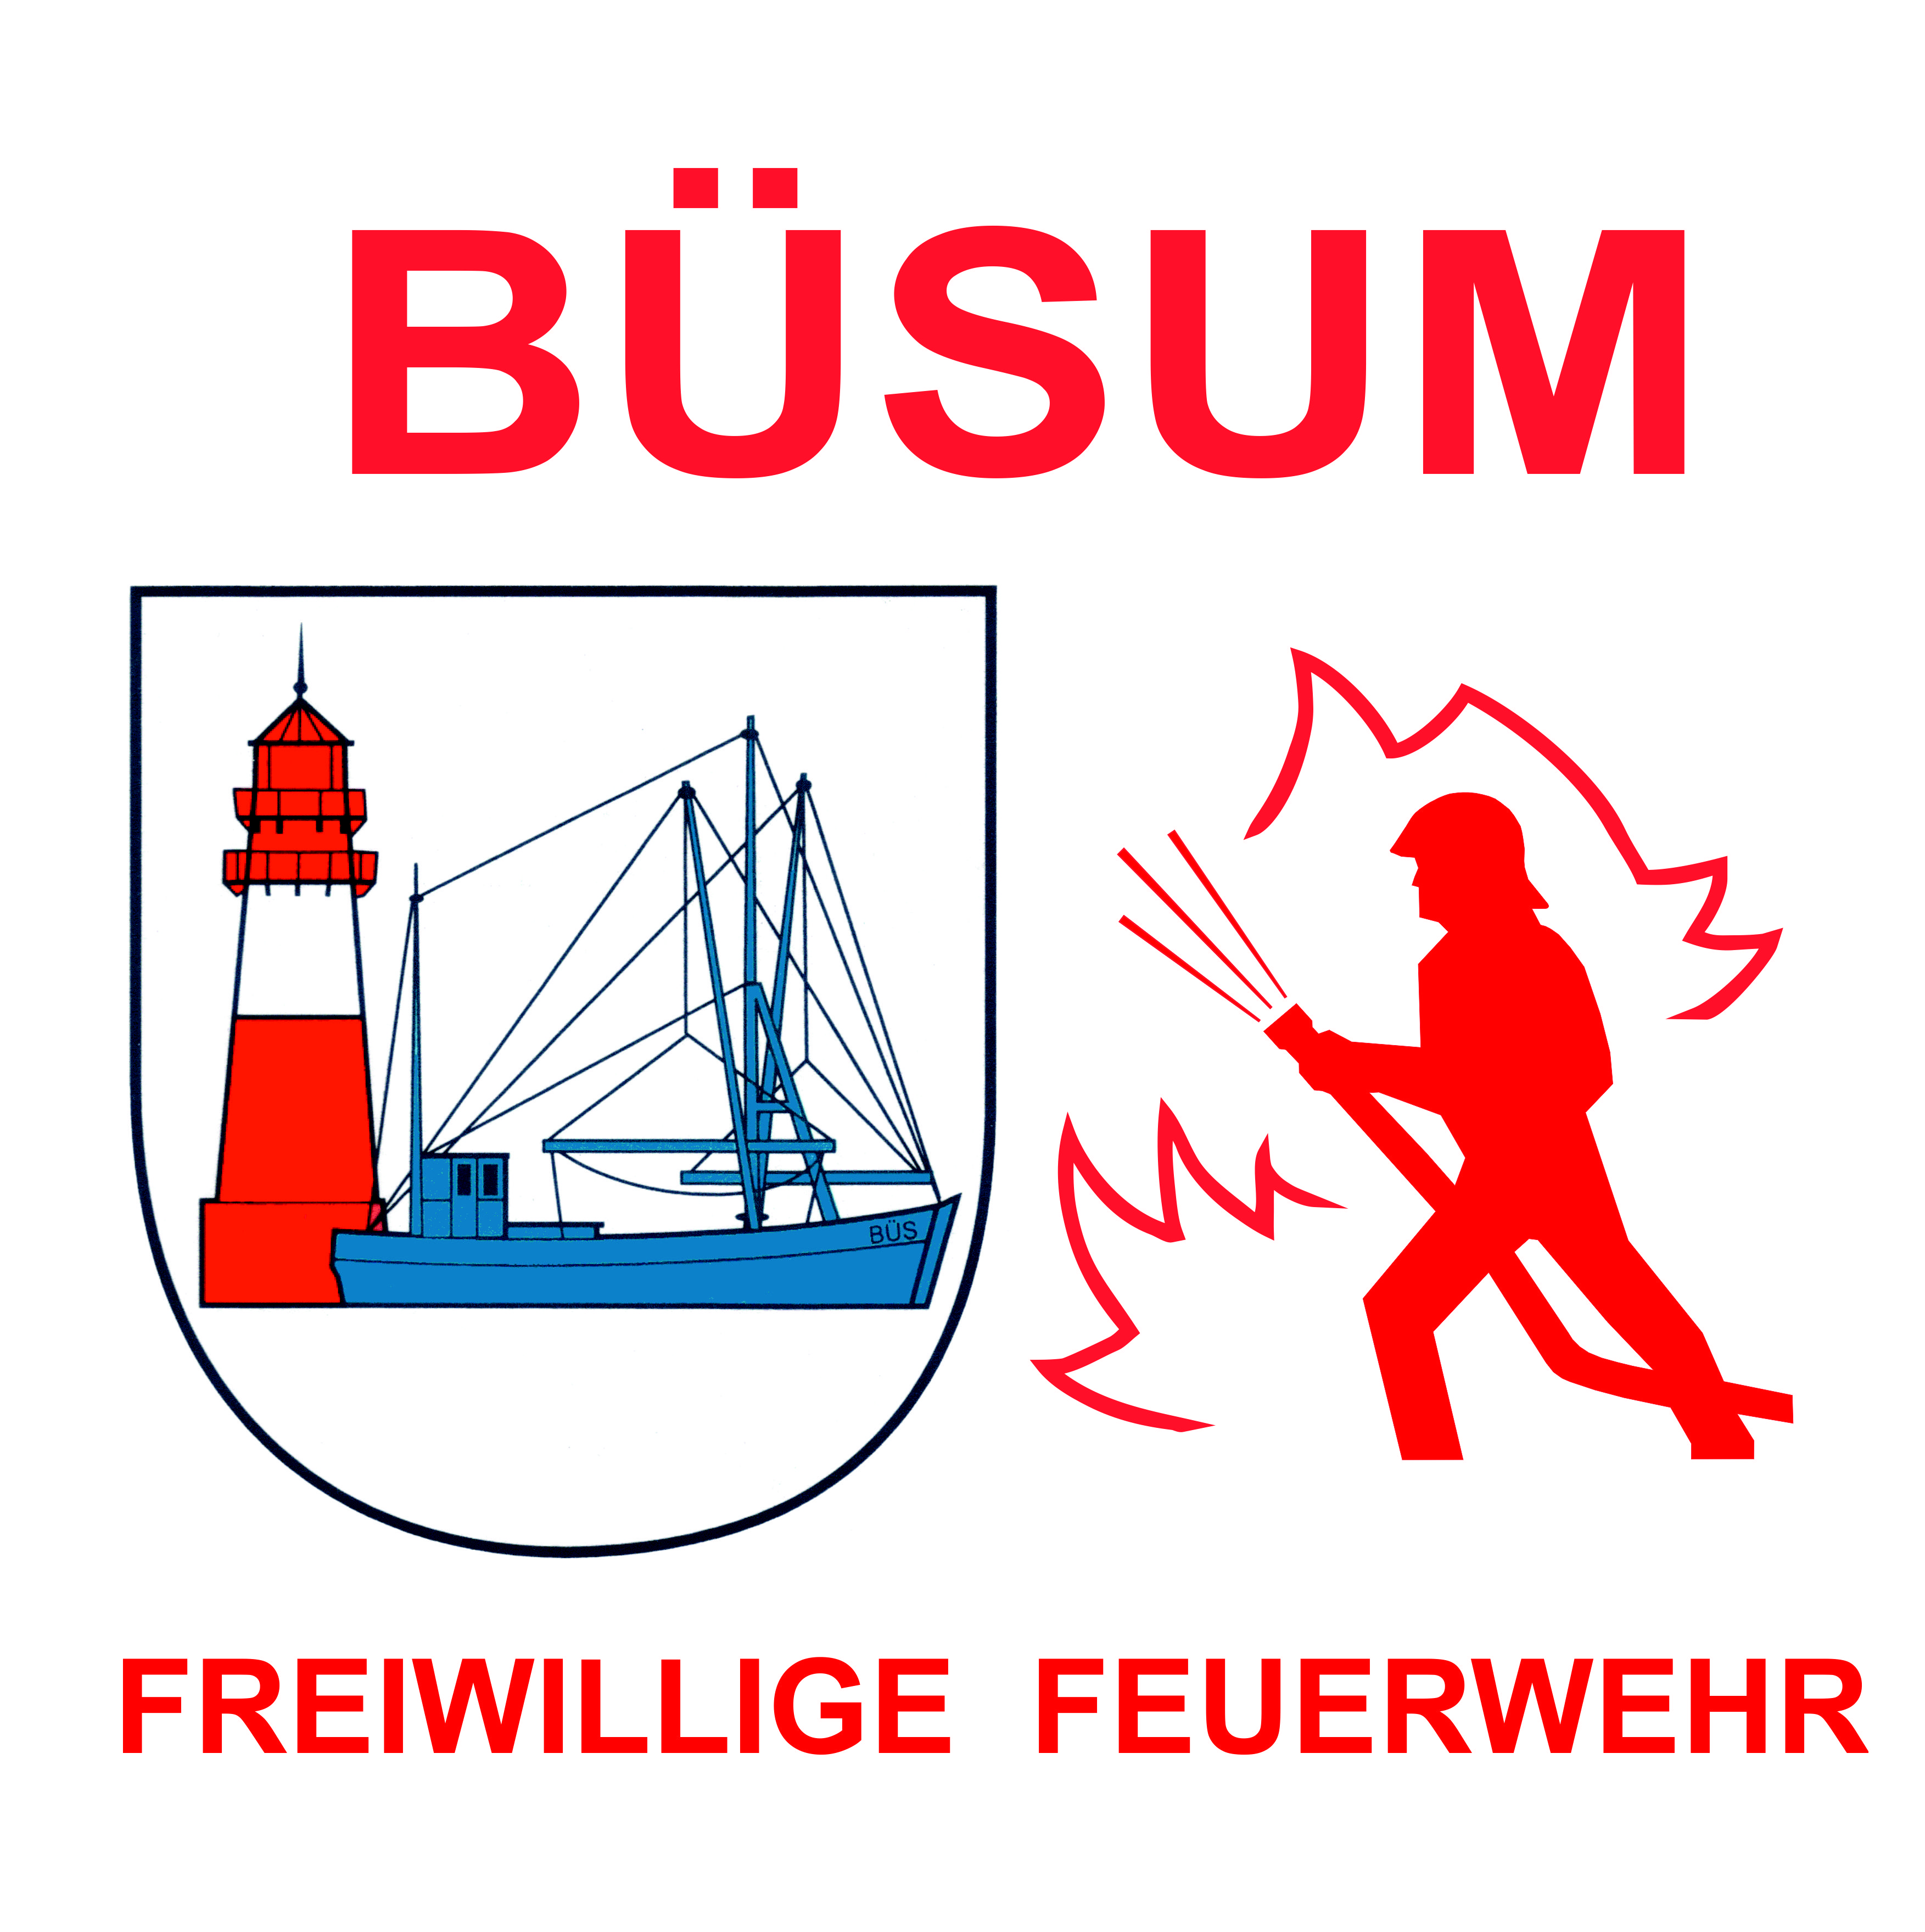 (c) Feuerwehr-buesum.de